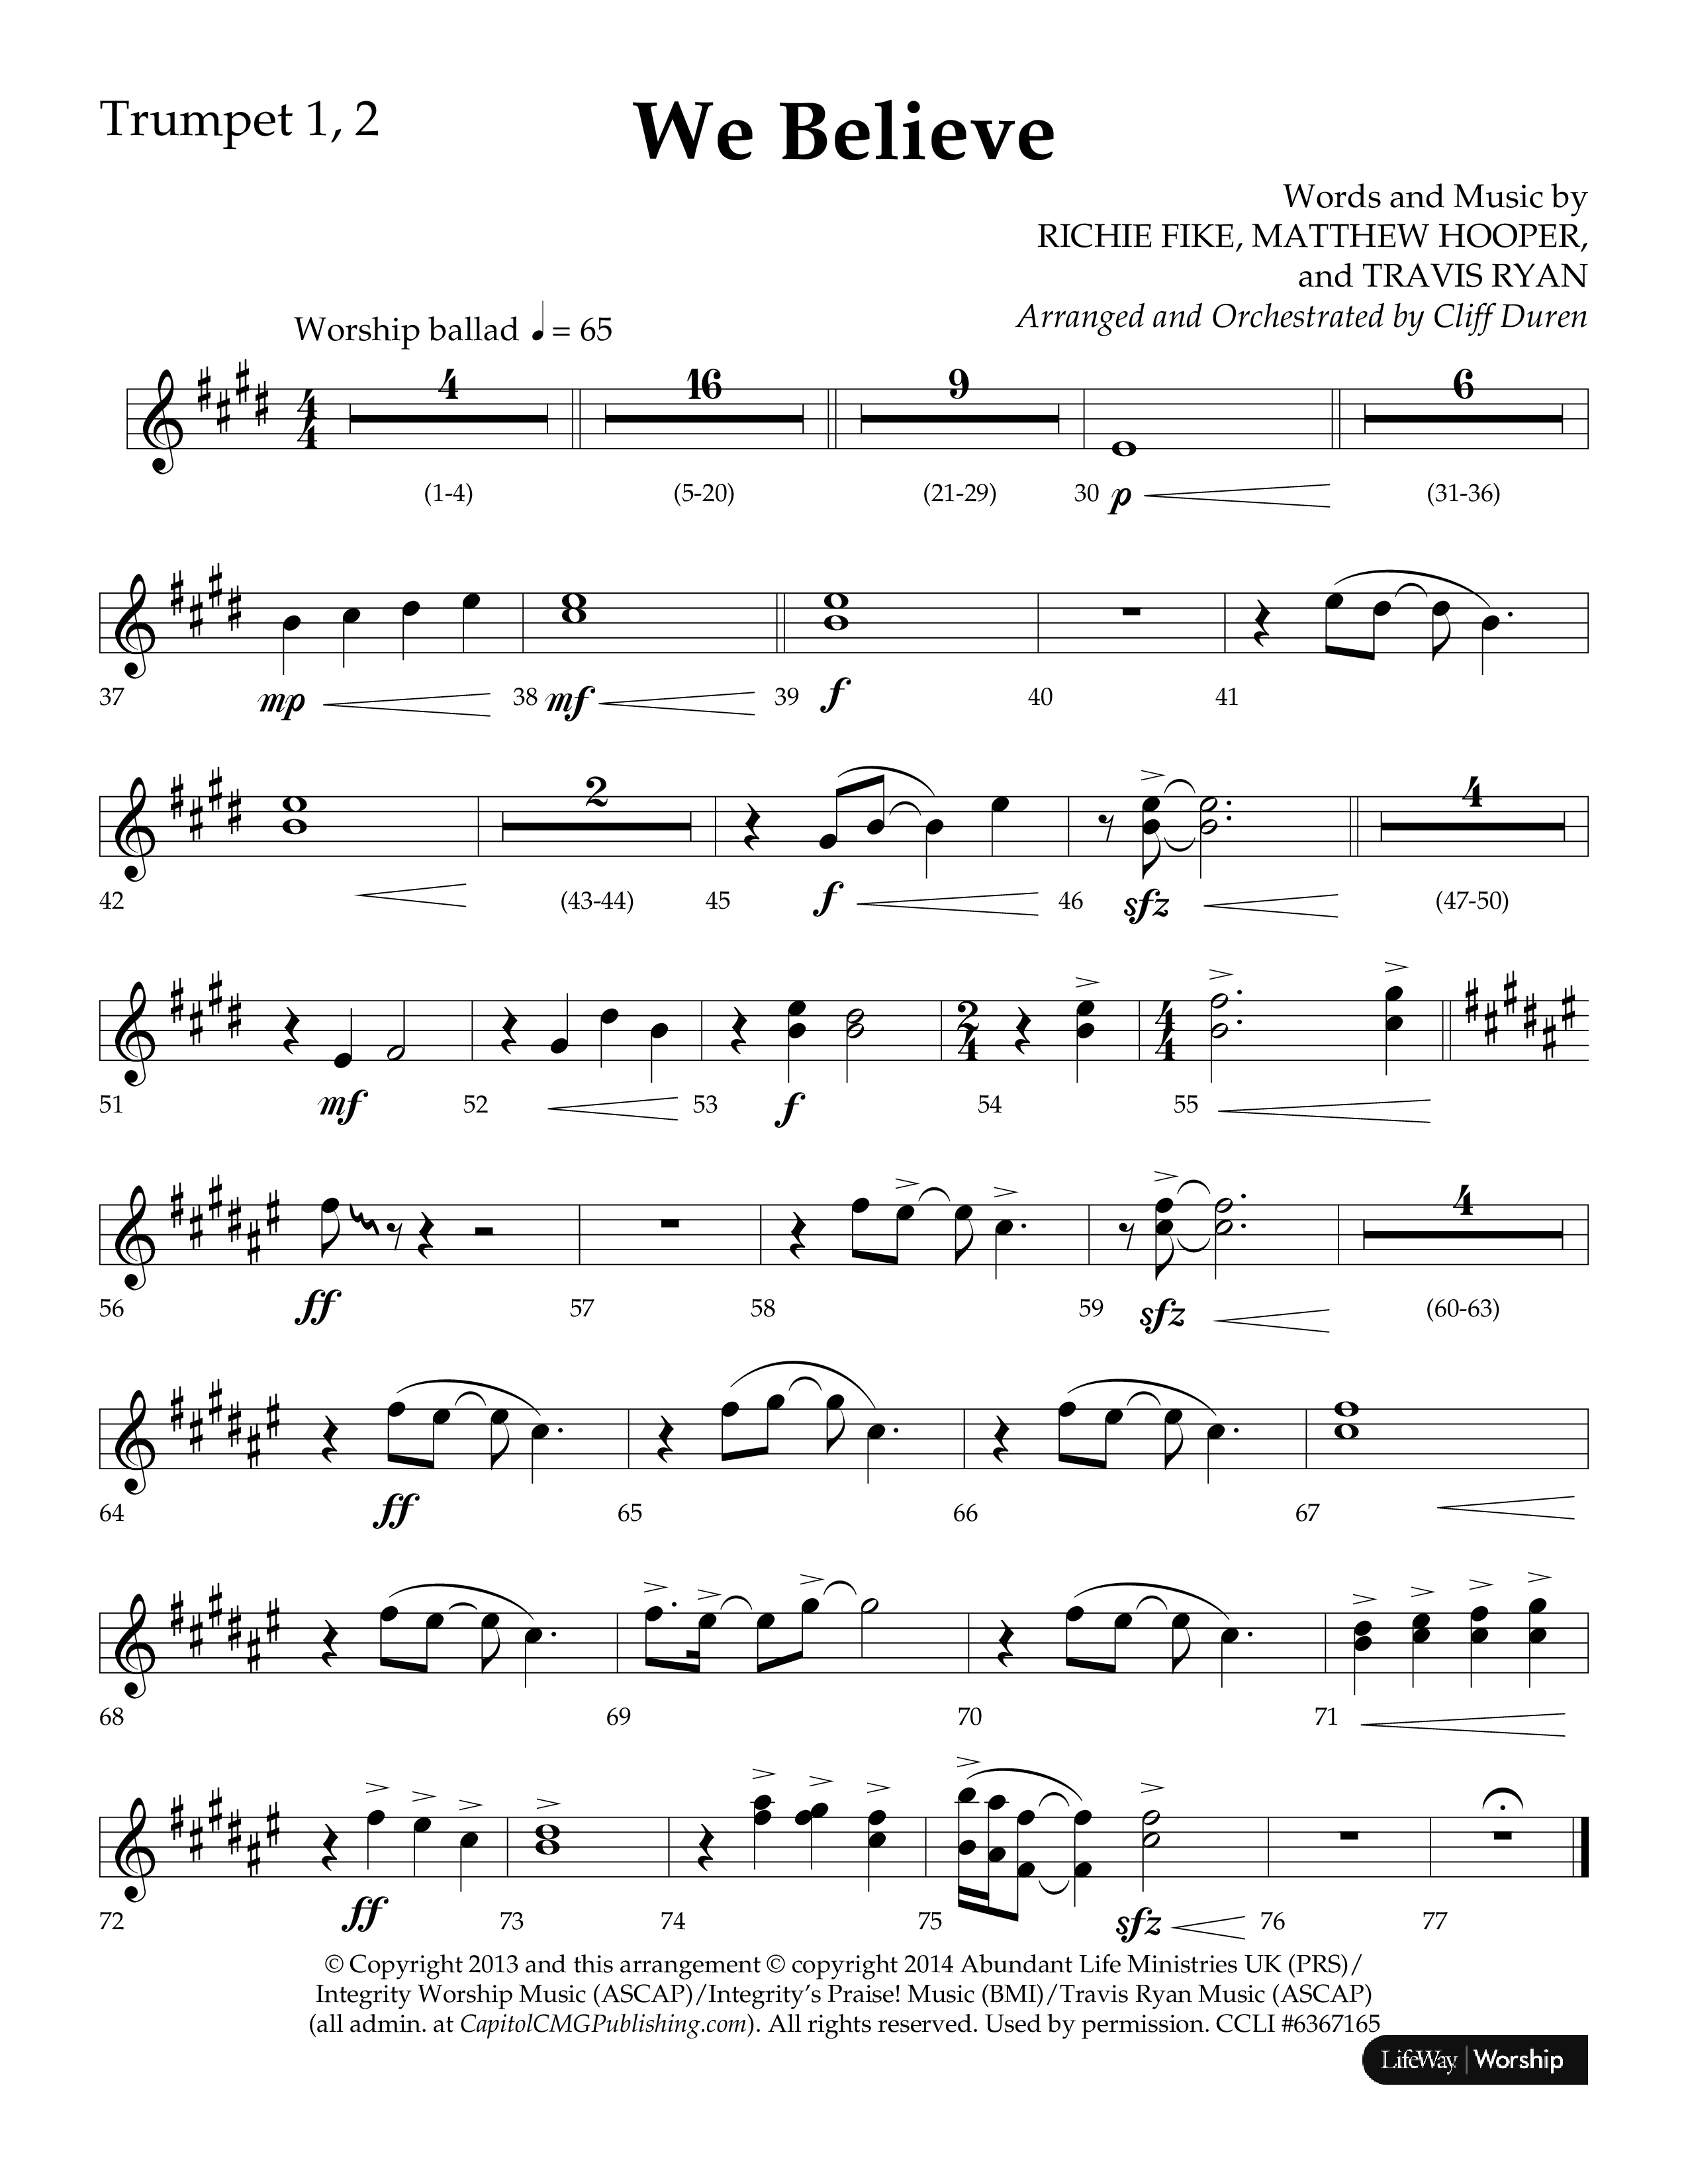 We Believe (Choral Anthem SATB) Trumpet 1,2 (Lifeway Choral / Arr. Cliff Duren)